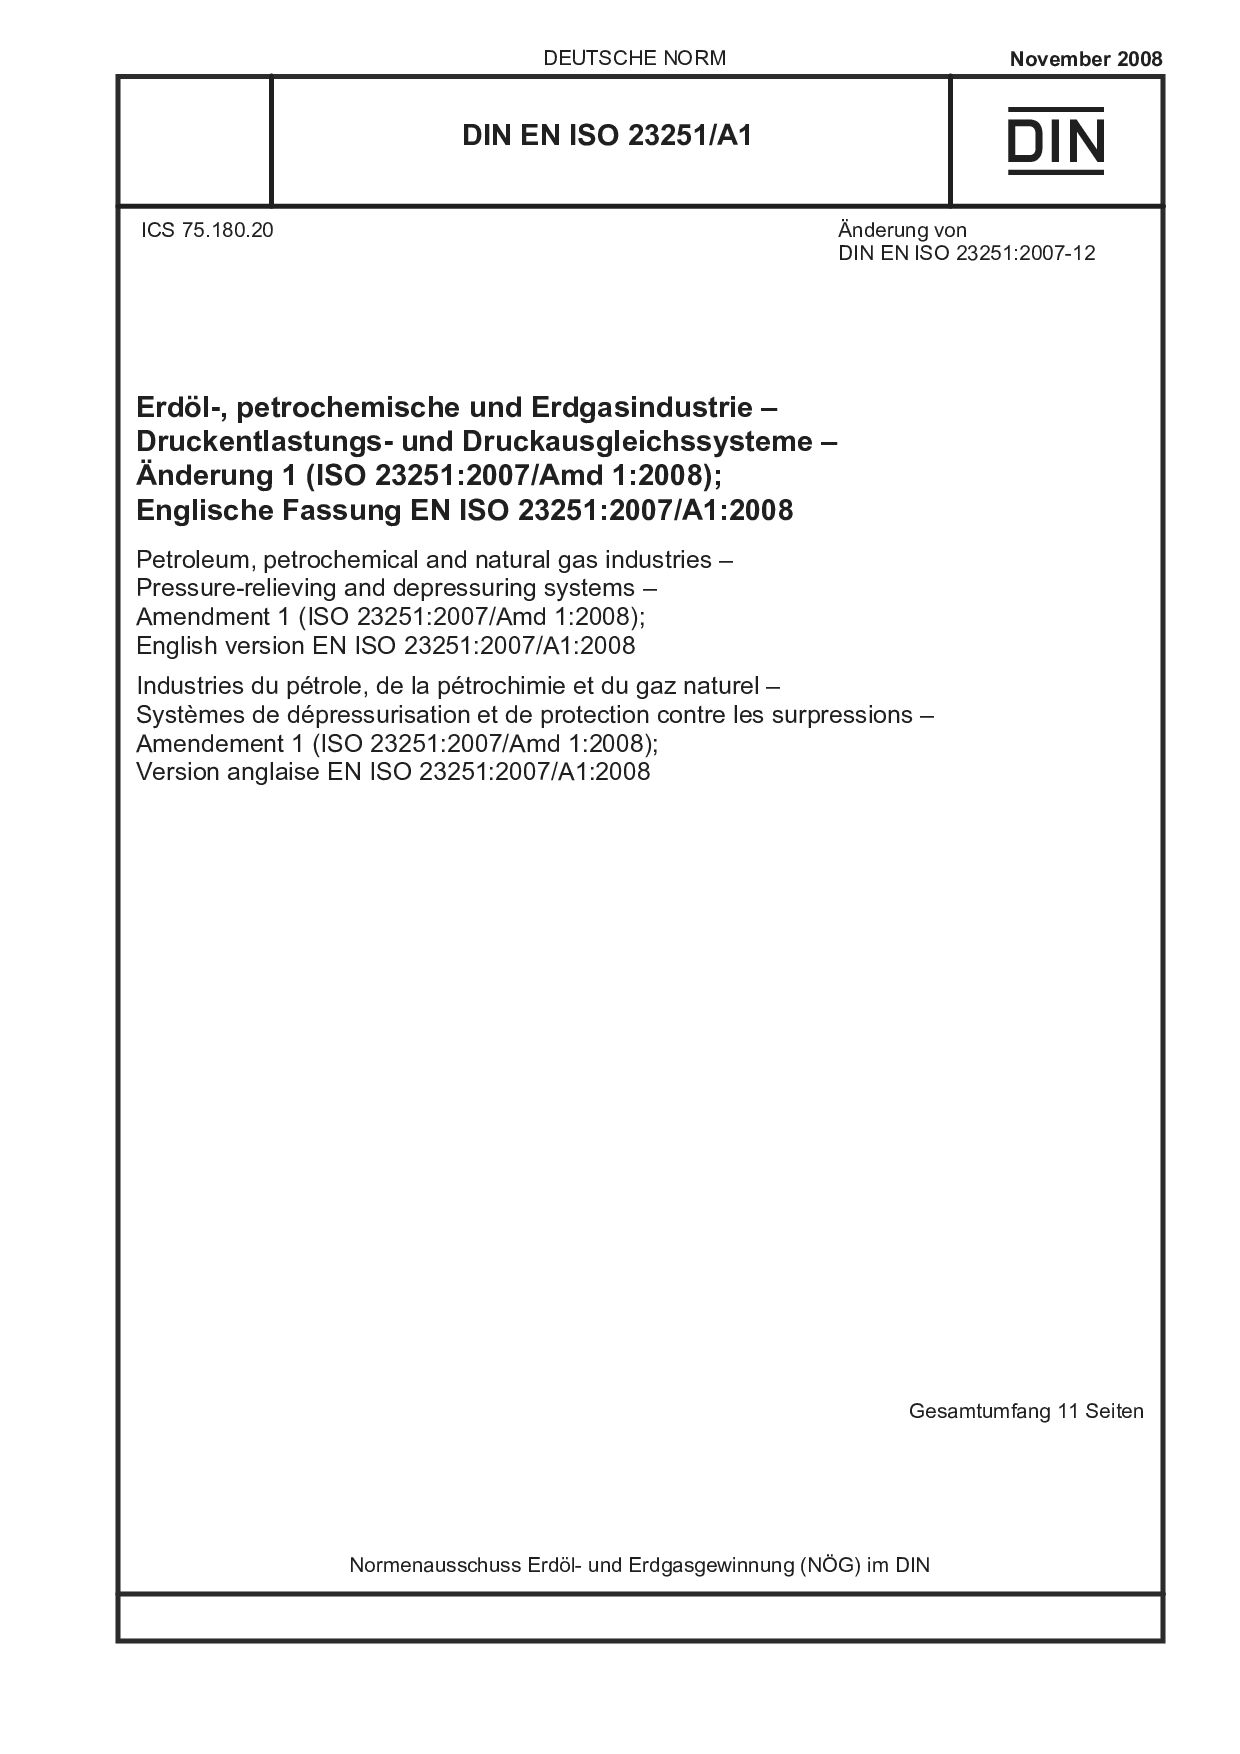 DIN EN ISO 23251/A1:2008